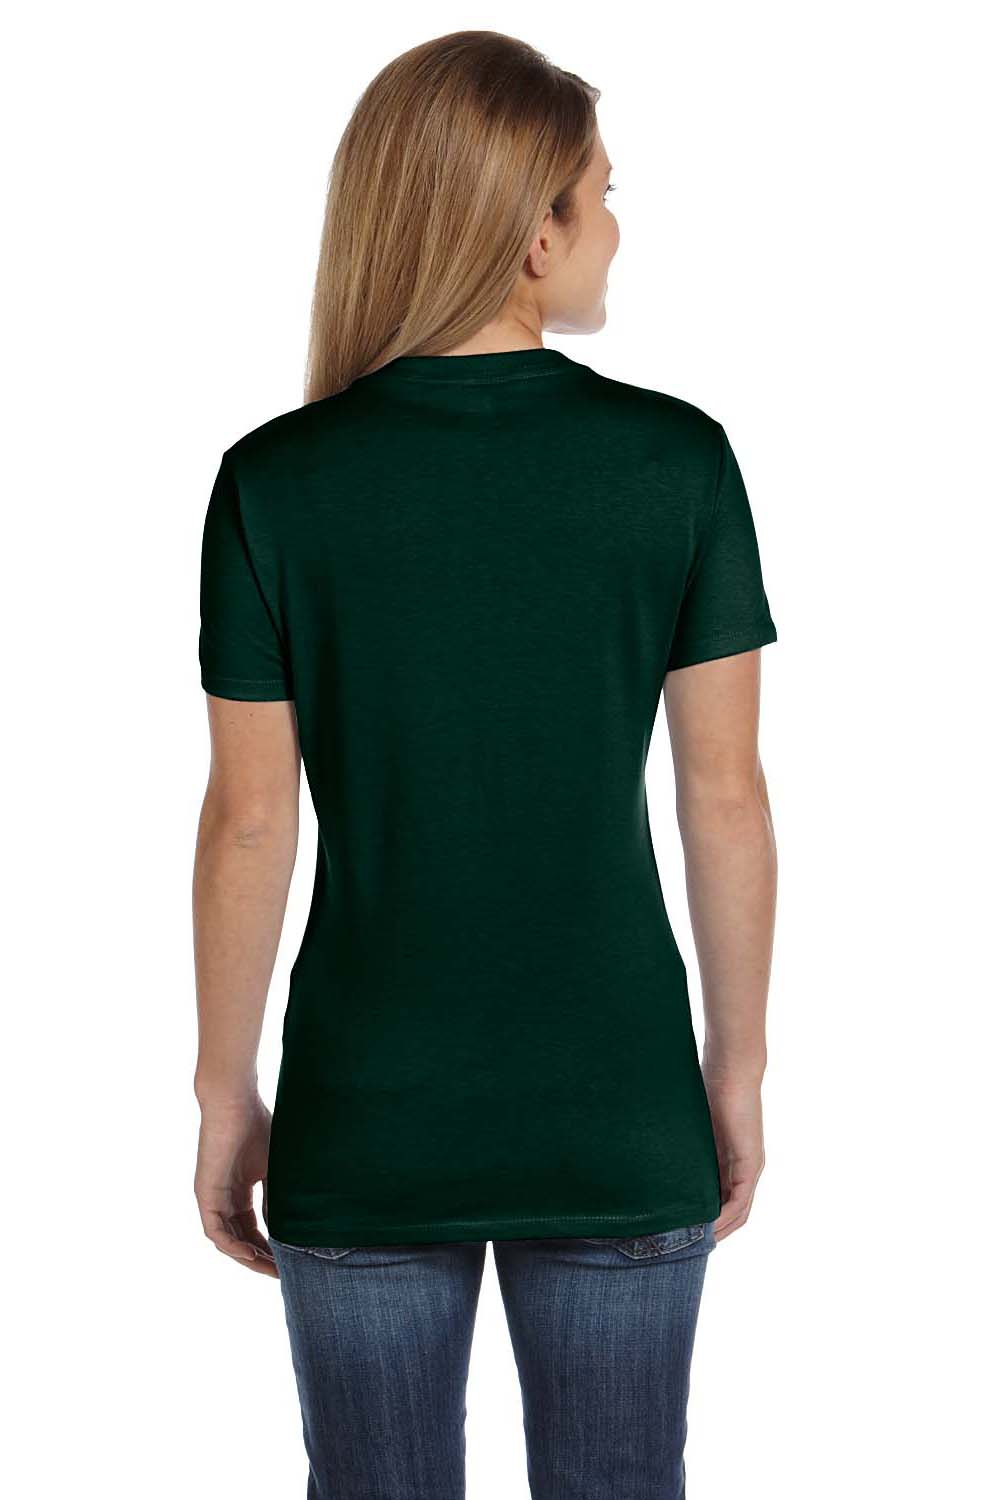 Hanes S04V Womens Nano-T Short Sleeve V-Neck T-Shirt Forest Green Back